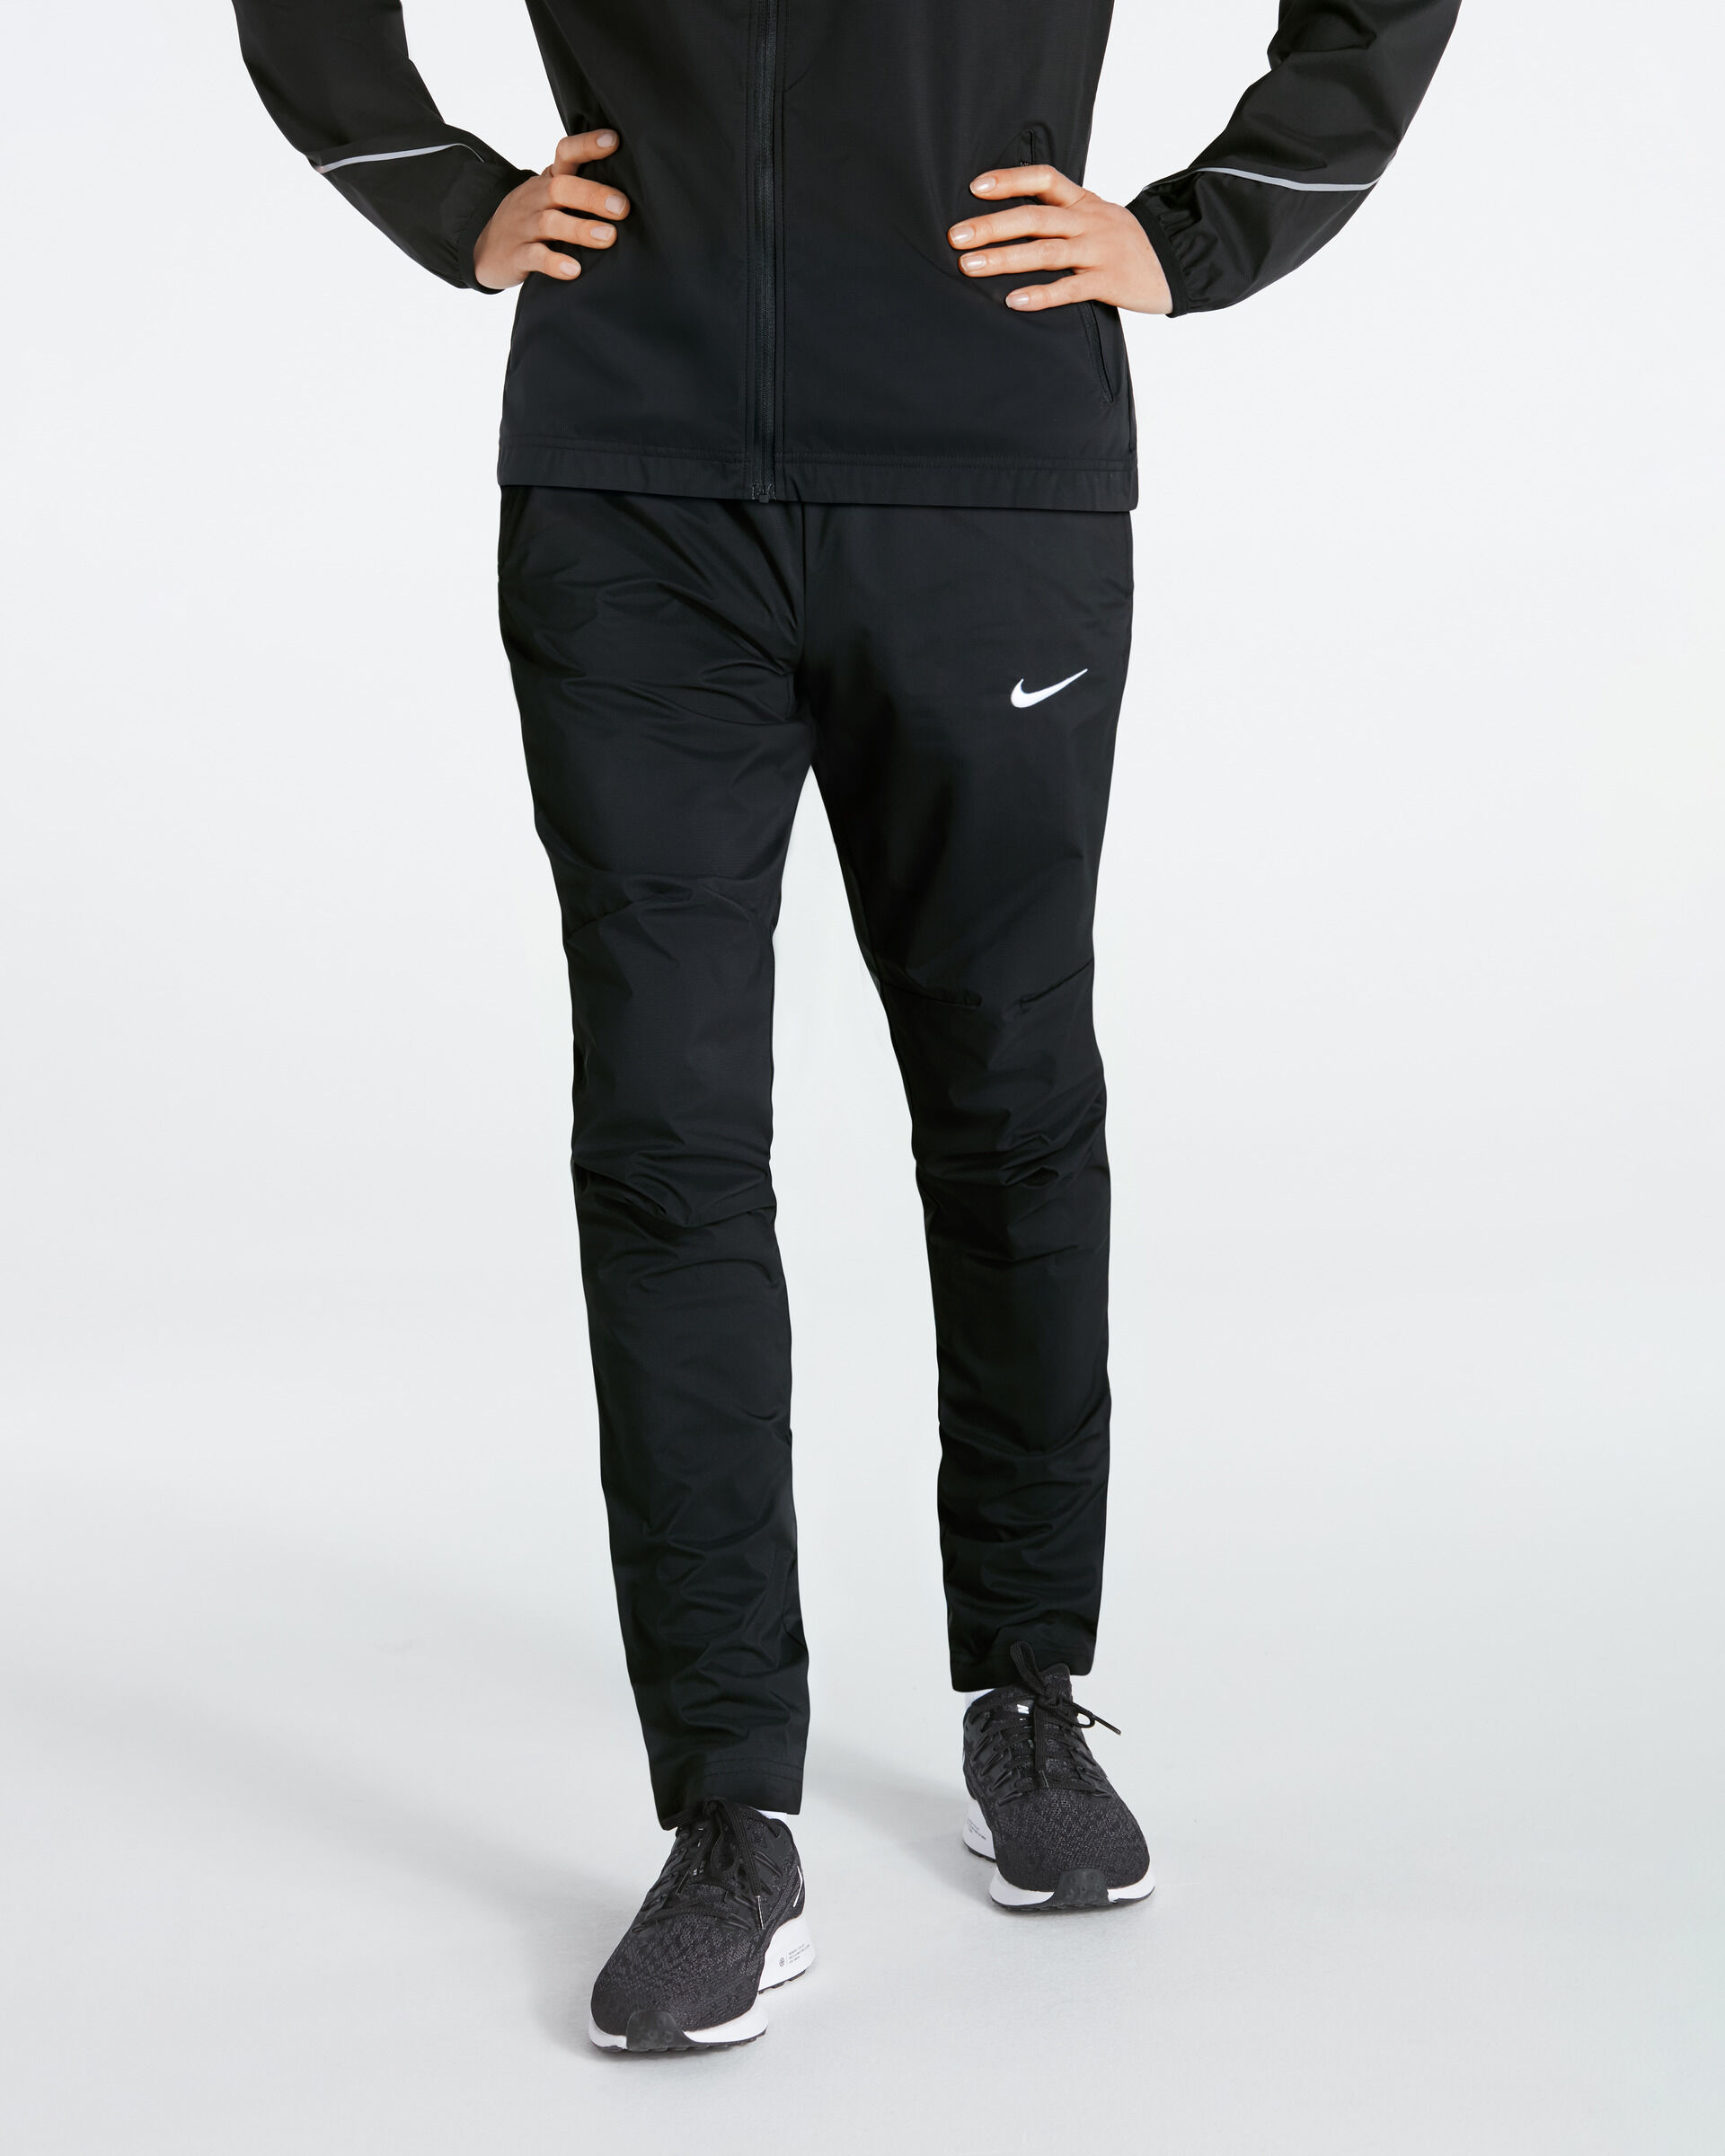 Pantalón de chándal Nike Woven Negro para Mujeres - NT0322-010